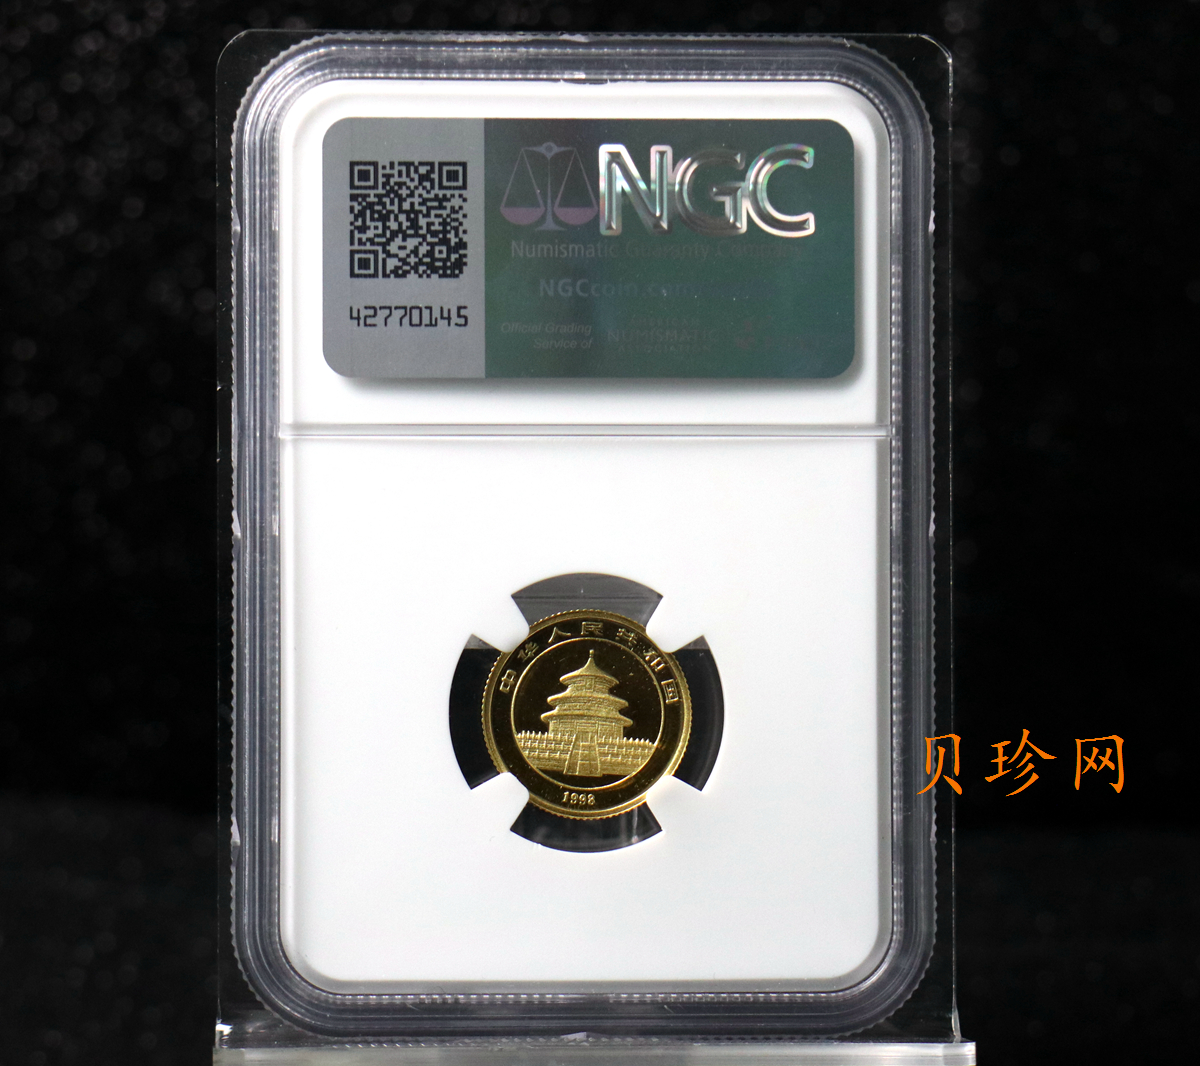 【980104】1998版熊猫金银纪念币1/10盎司普制金币